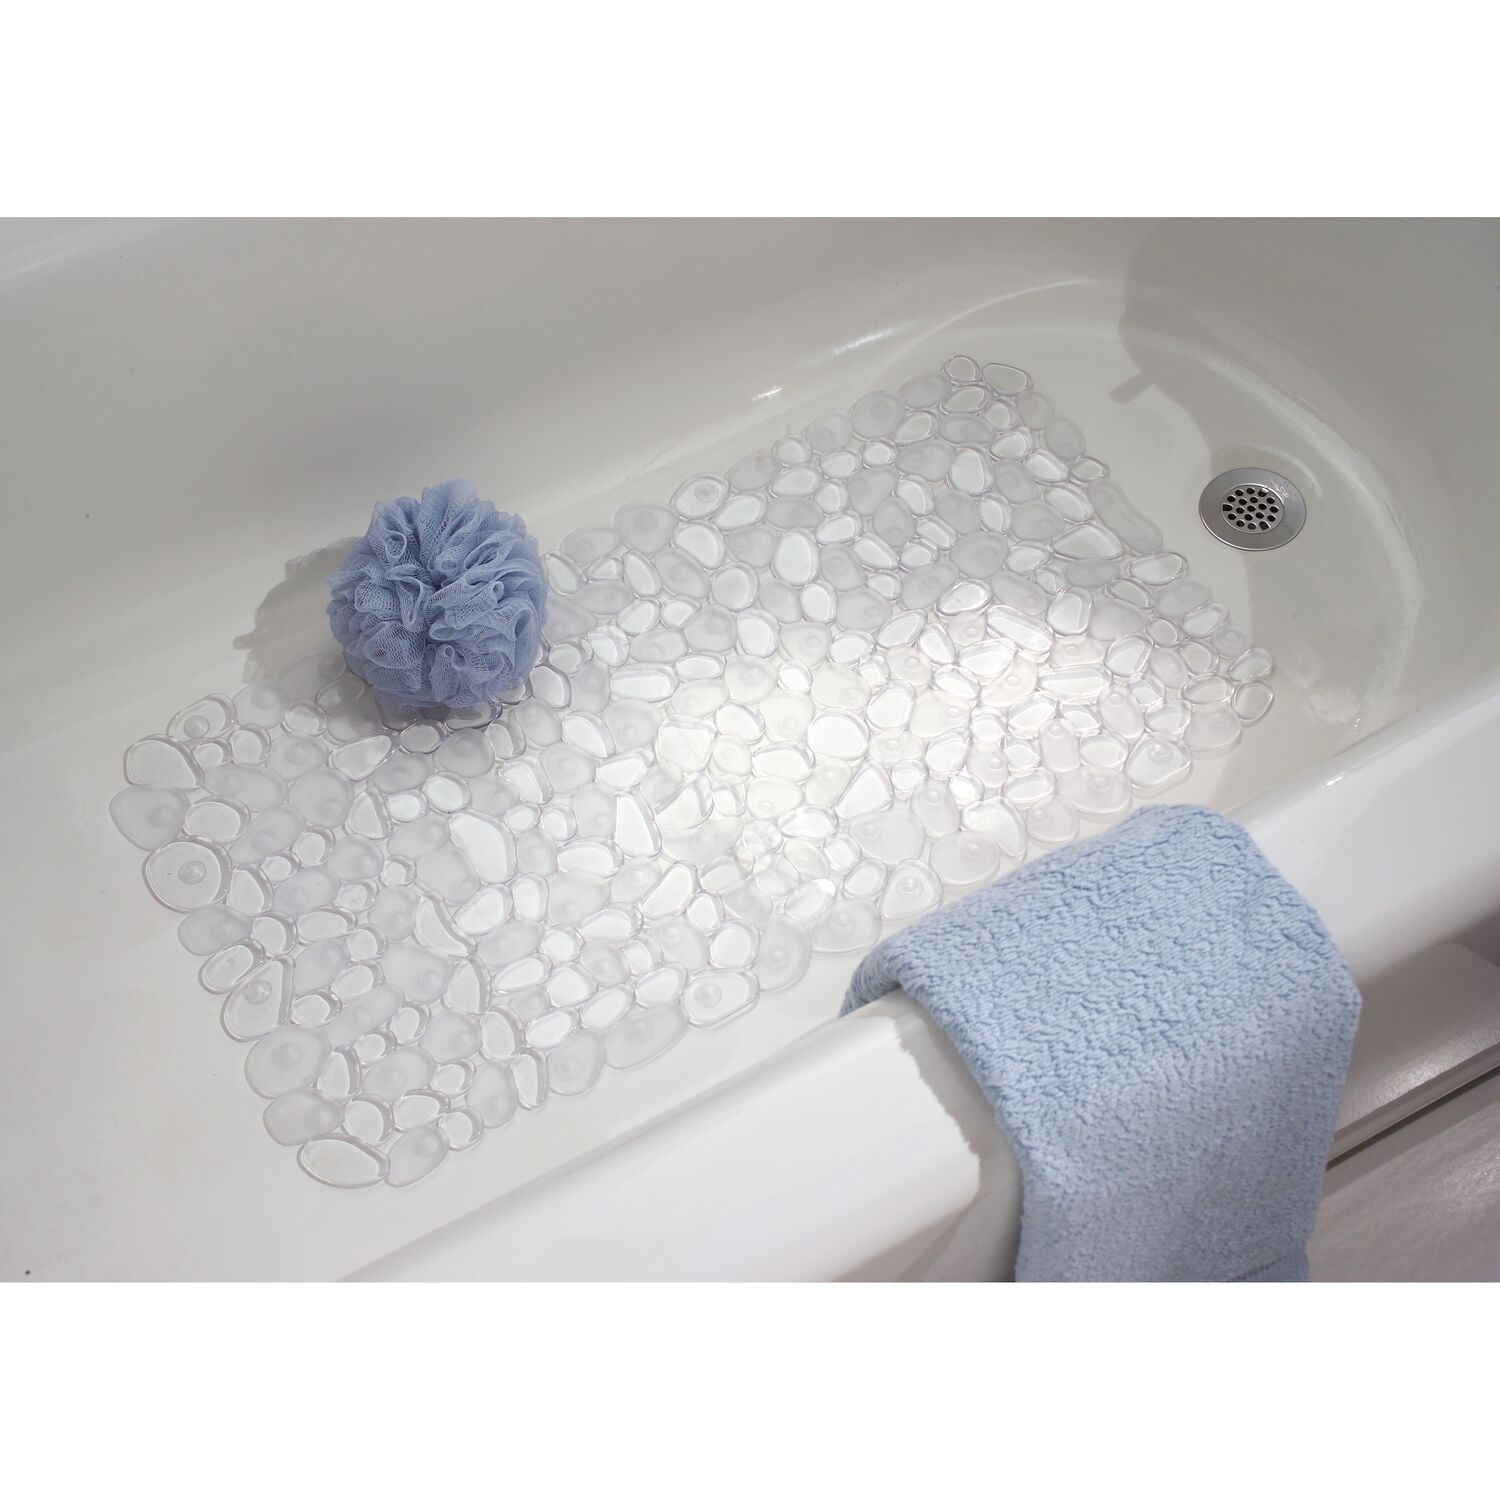 Bathtub Blue iDesign Pebblz Suction Non-Slip Bath Mat for Shower Set of 1 